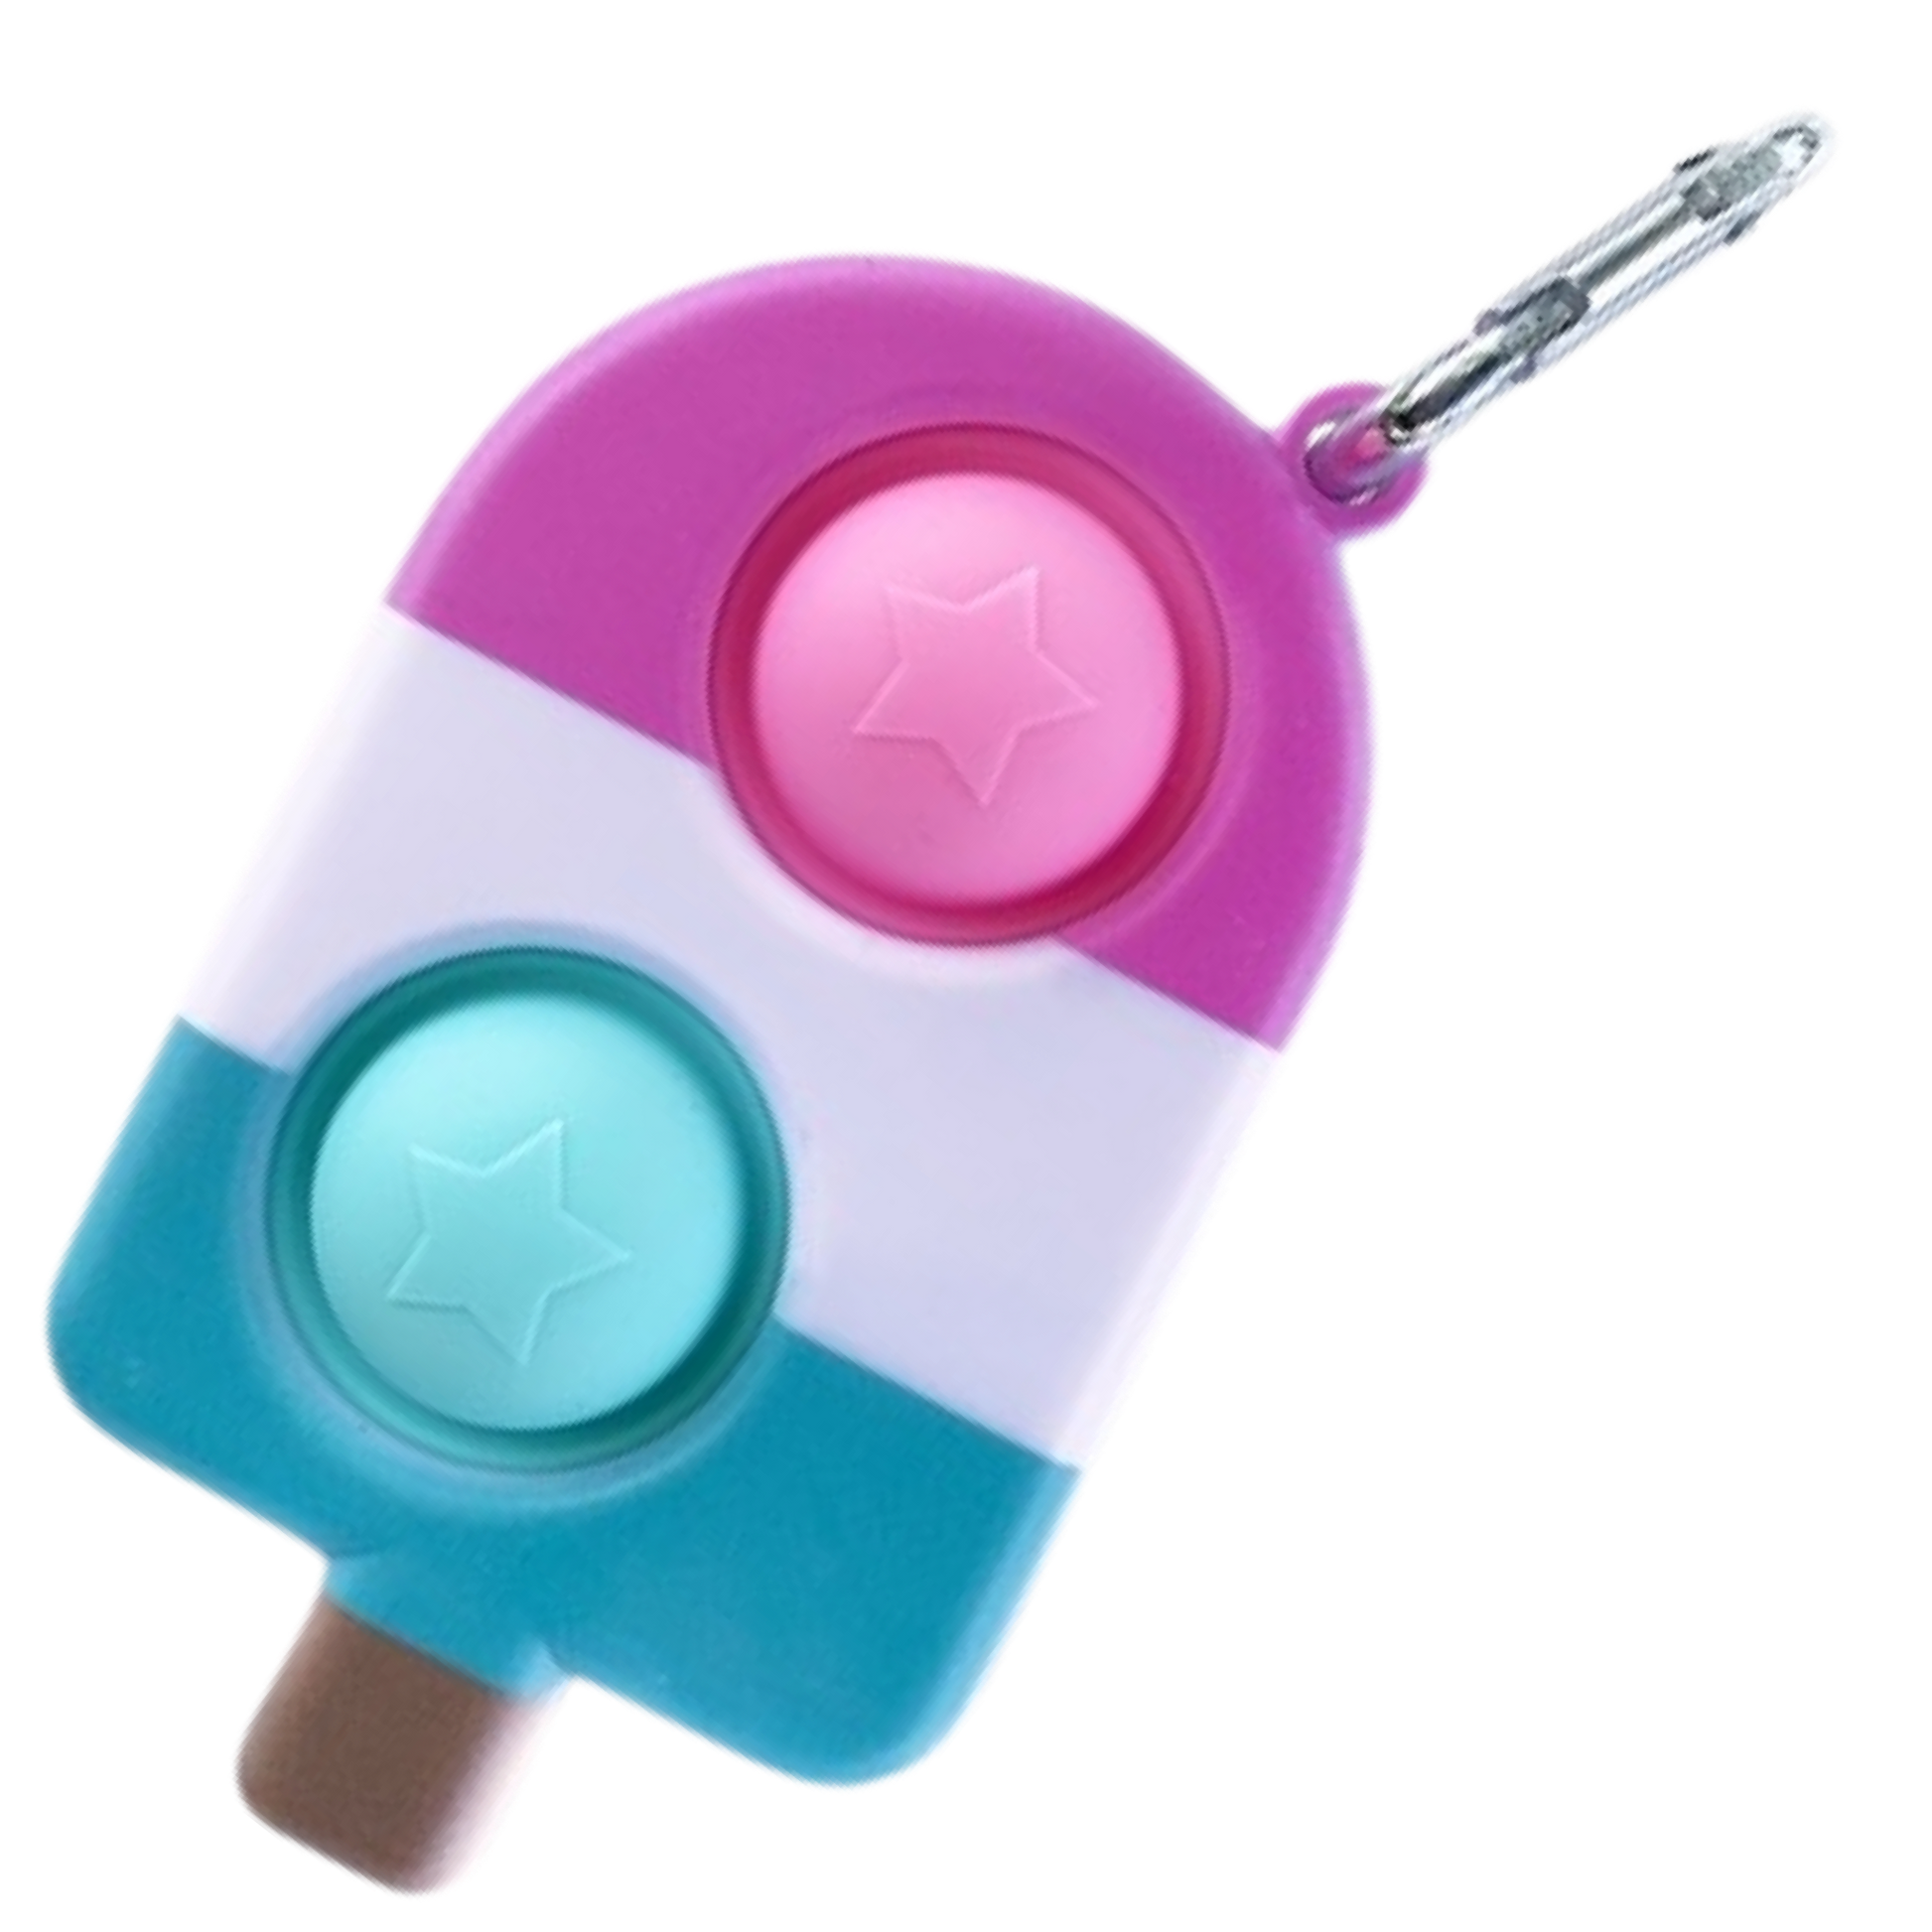 Popsicle Pop-it Fidget Toy